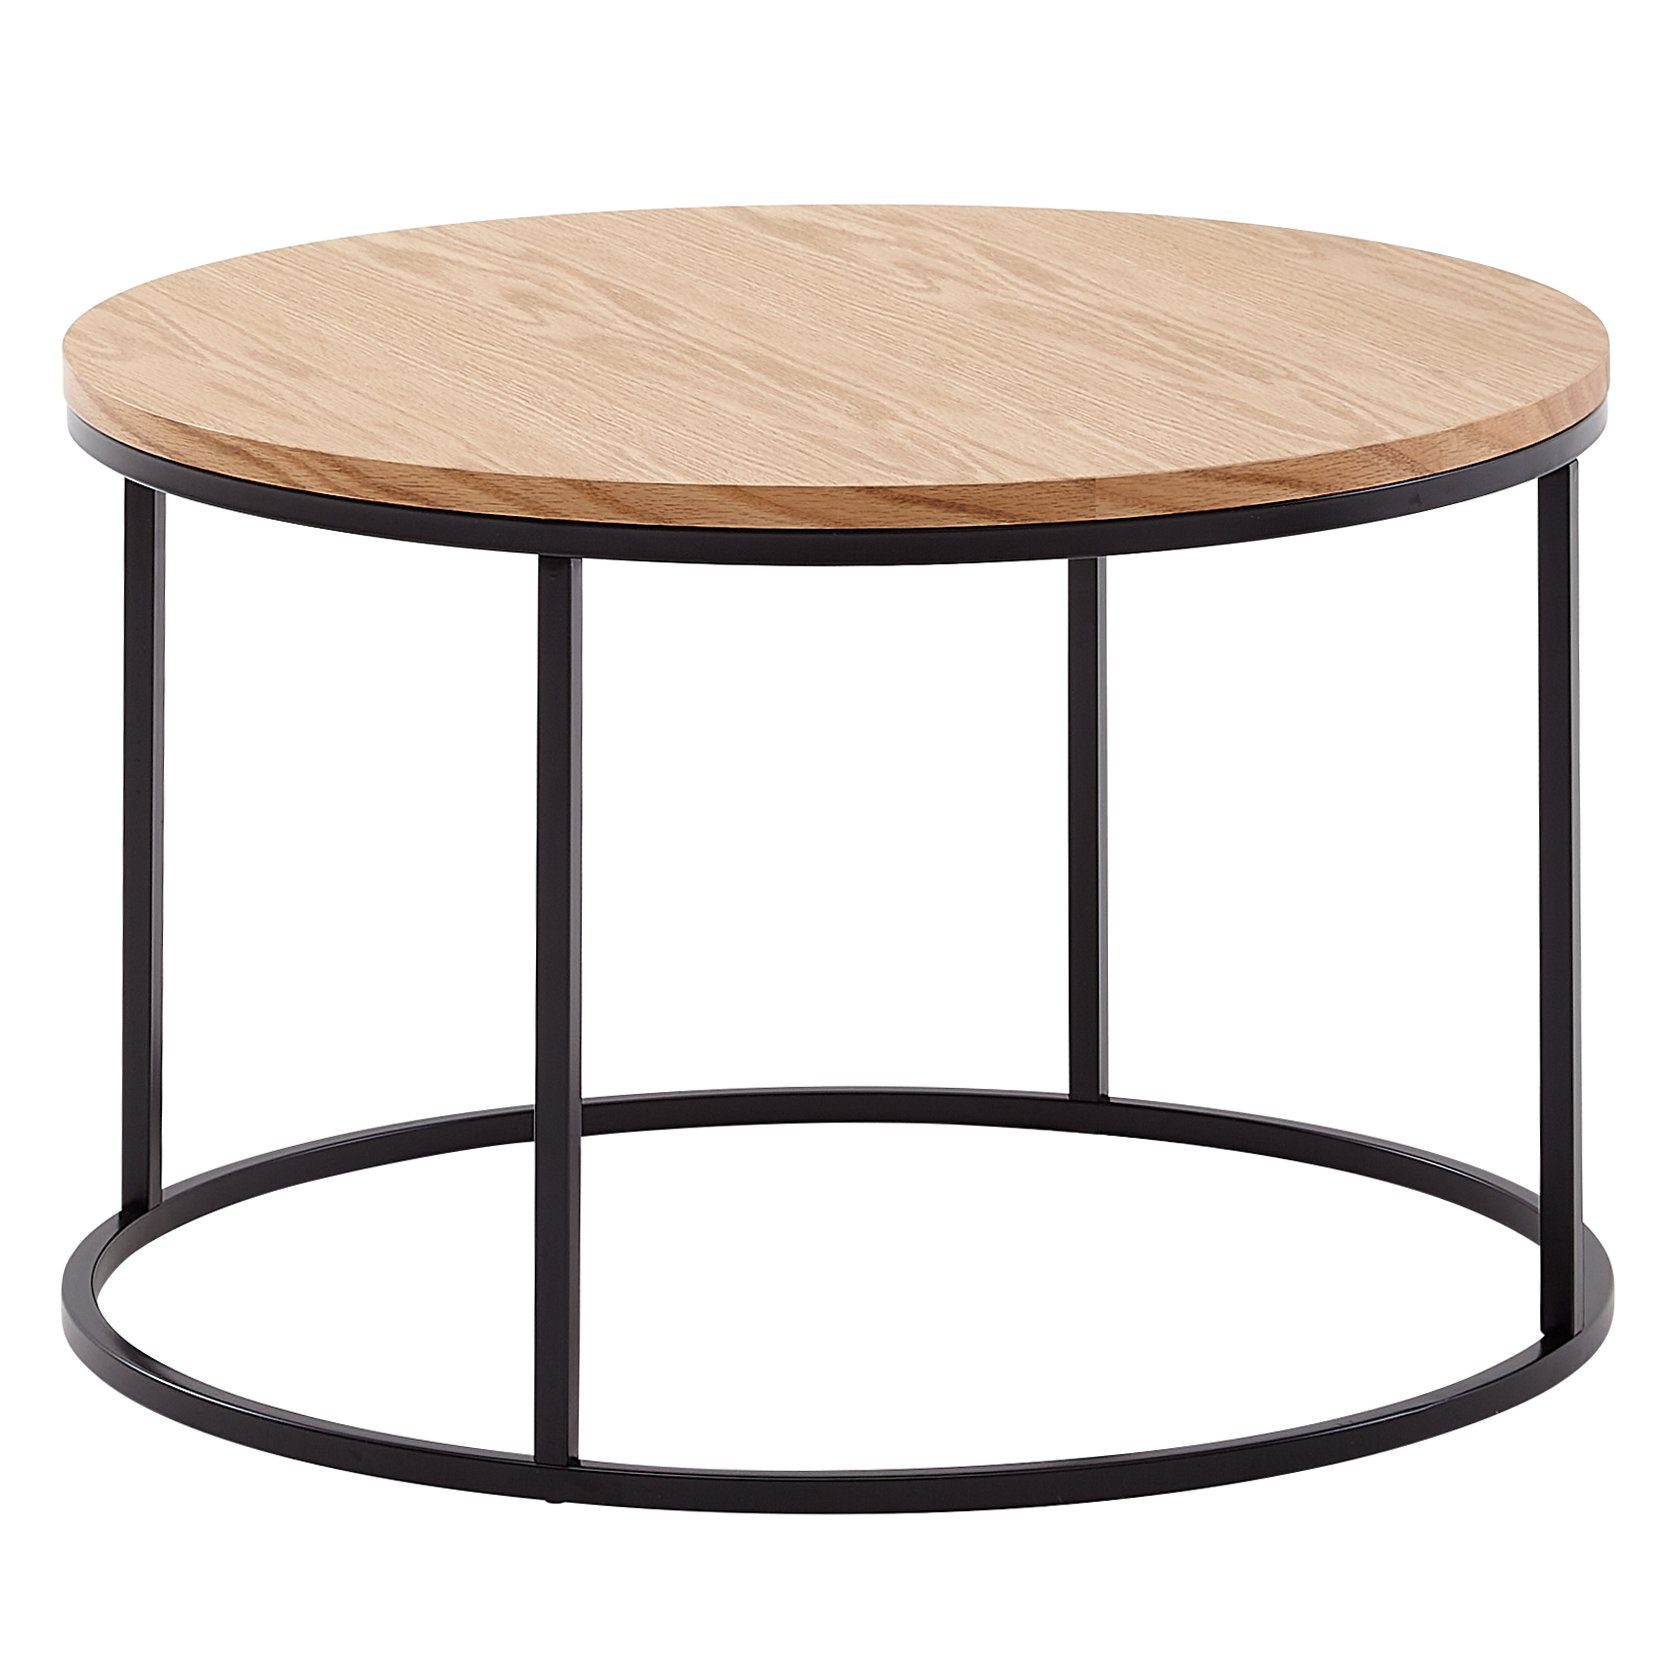 Wohnling Couchtisch WL6.511 (70x70x45 cm Sofatisch Holz / Metall, Tisch Eiche), Kaffeetisch Rund, Design Wohnzimmertisch Modern